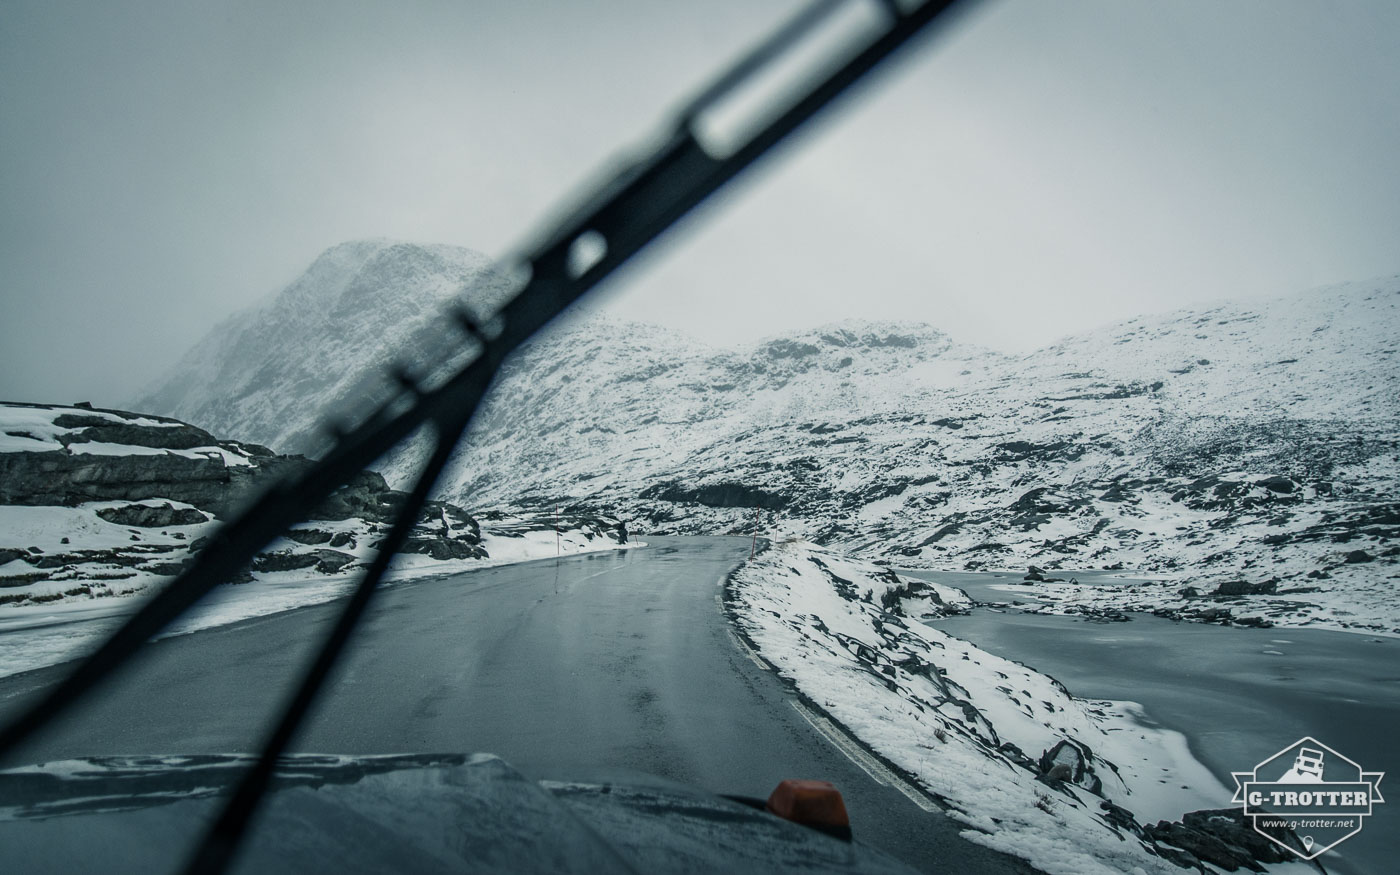 Bild 31 der Bildergalerie “Straßen von Norwegen”